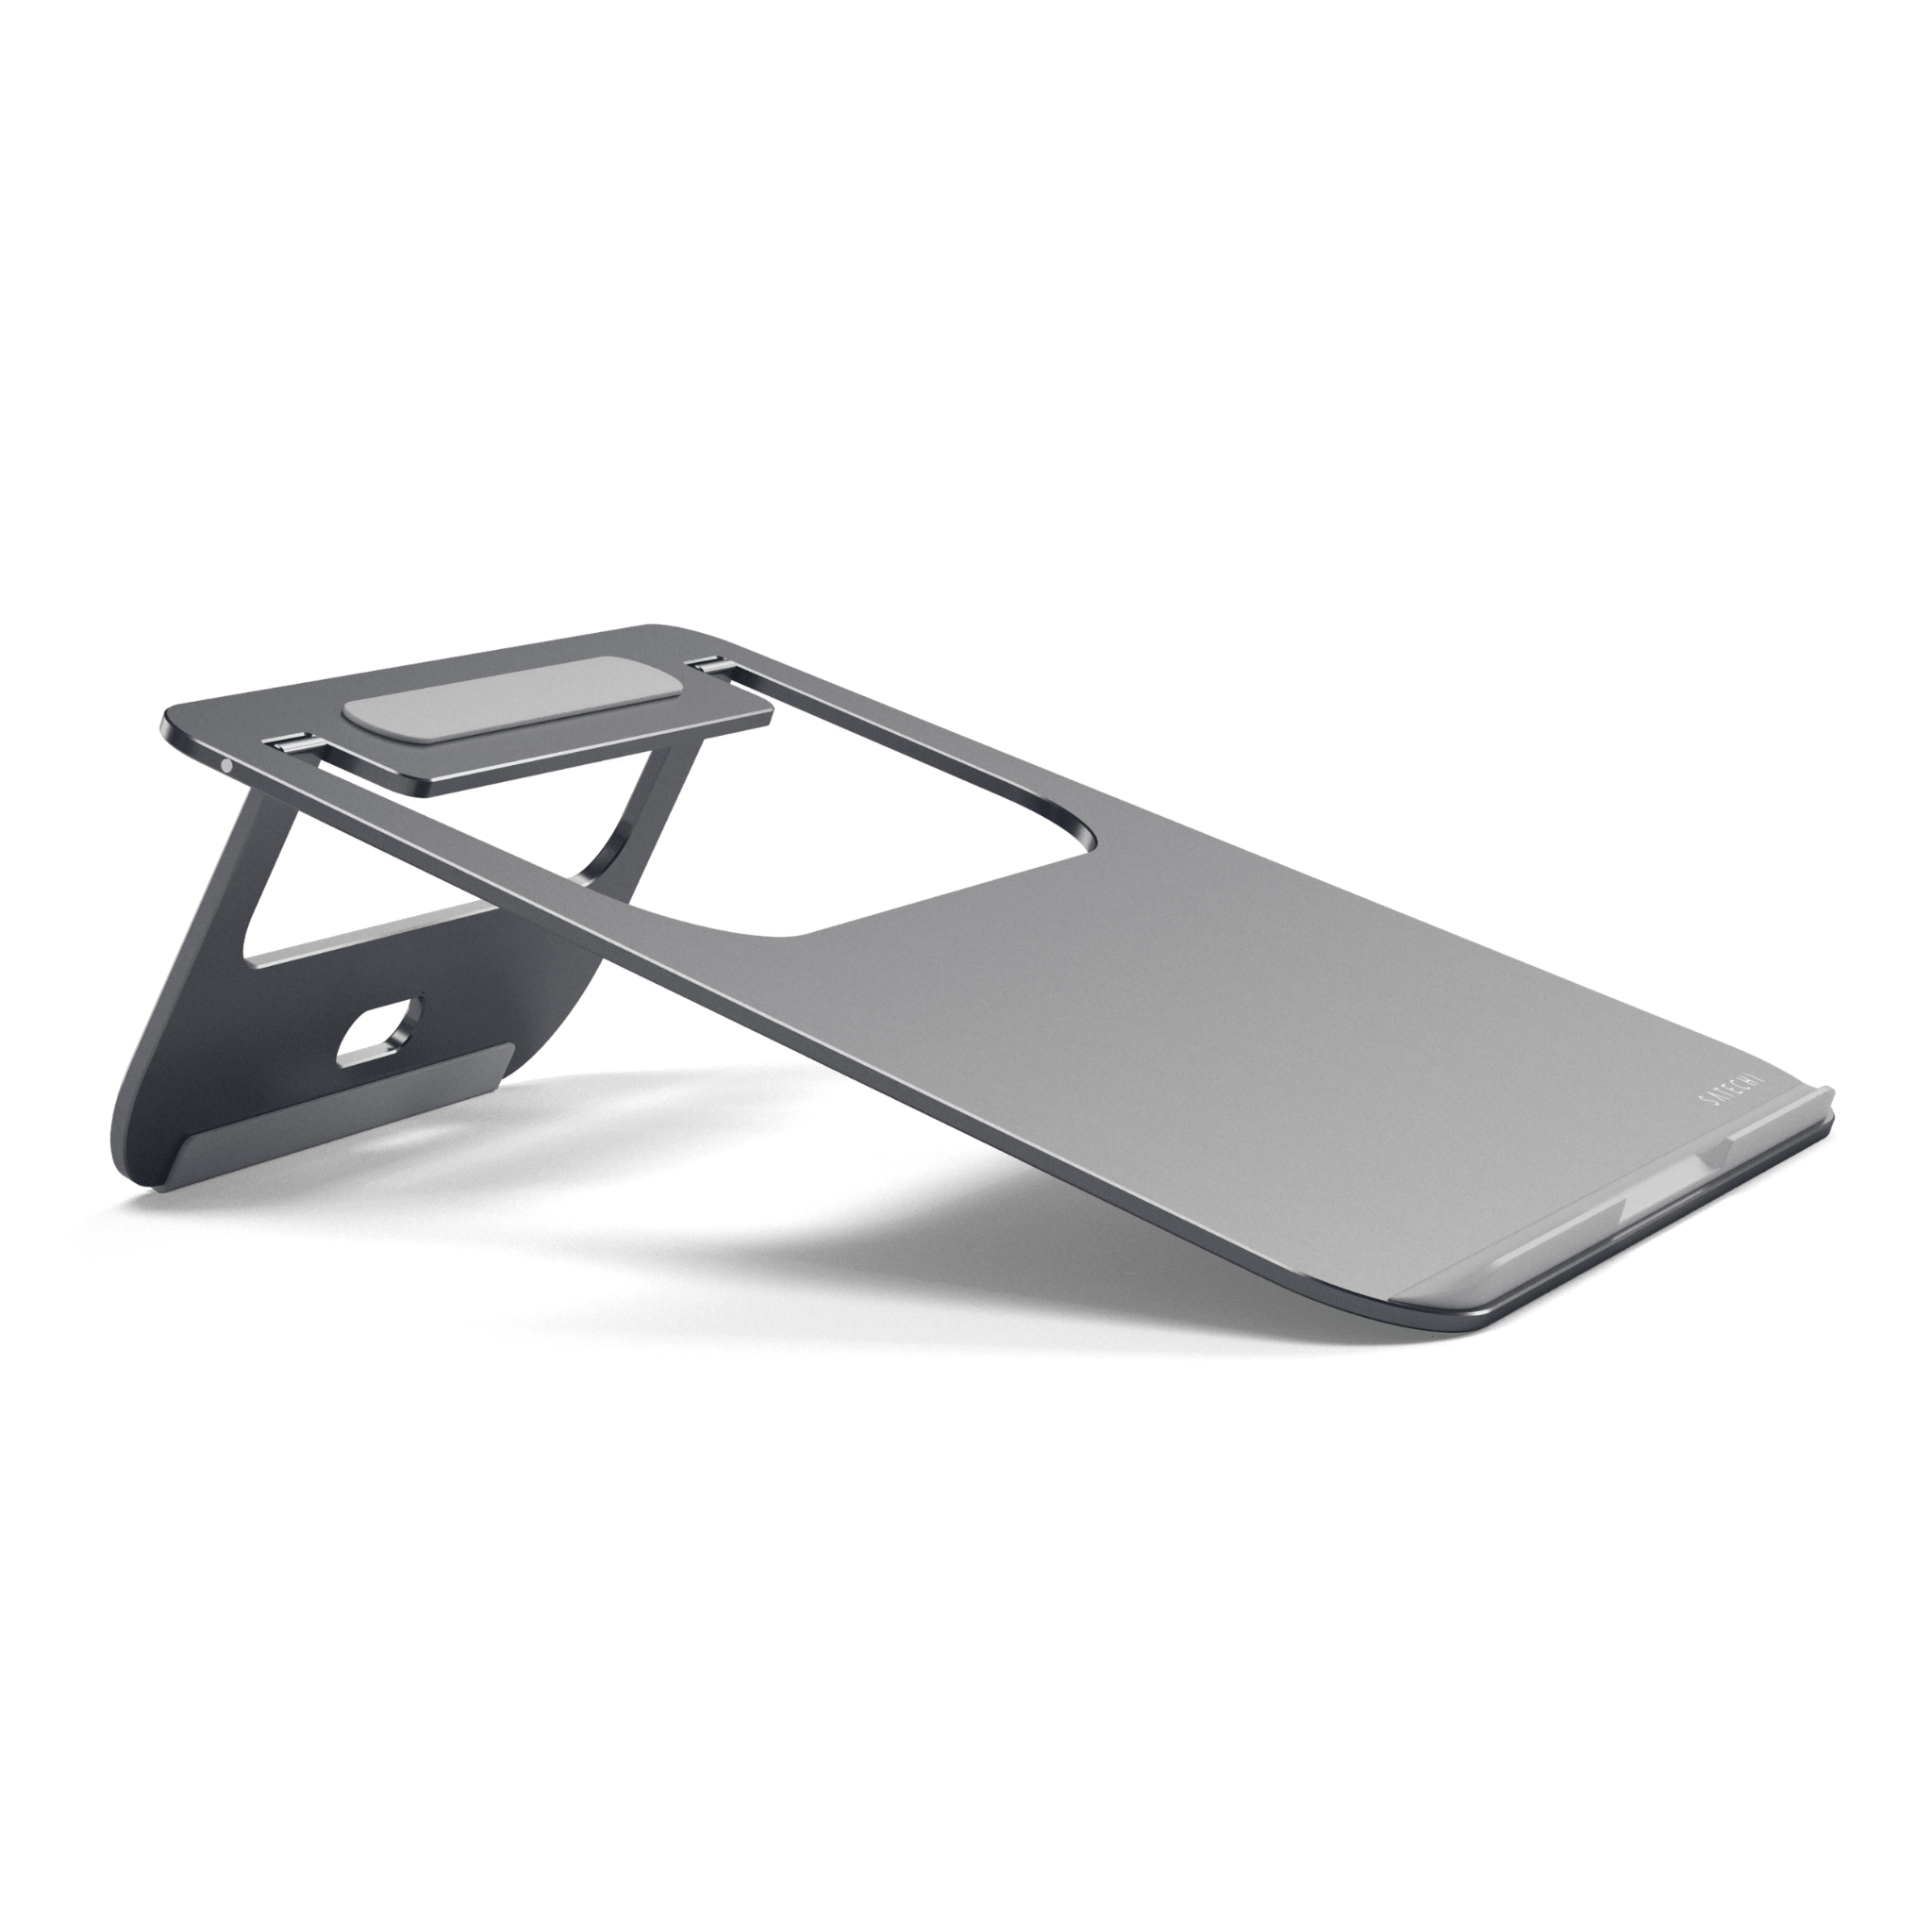  Giá đỡ nhôm Satechi Aluminum Stand cho laptop, MacBook Chính hãng 